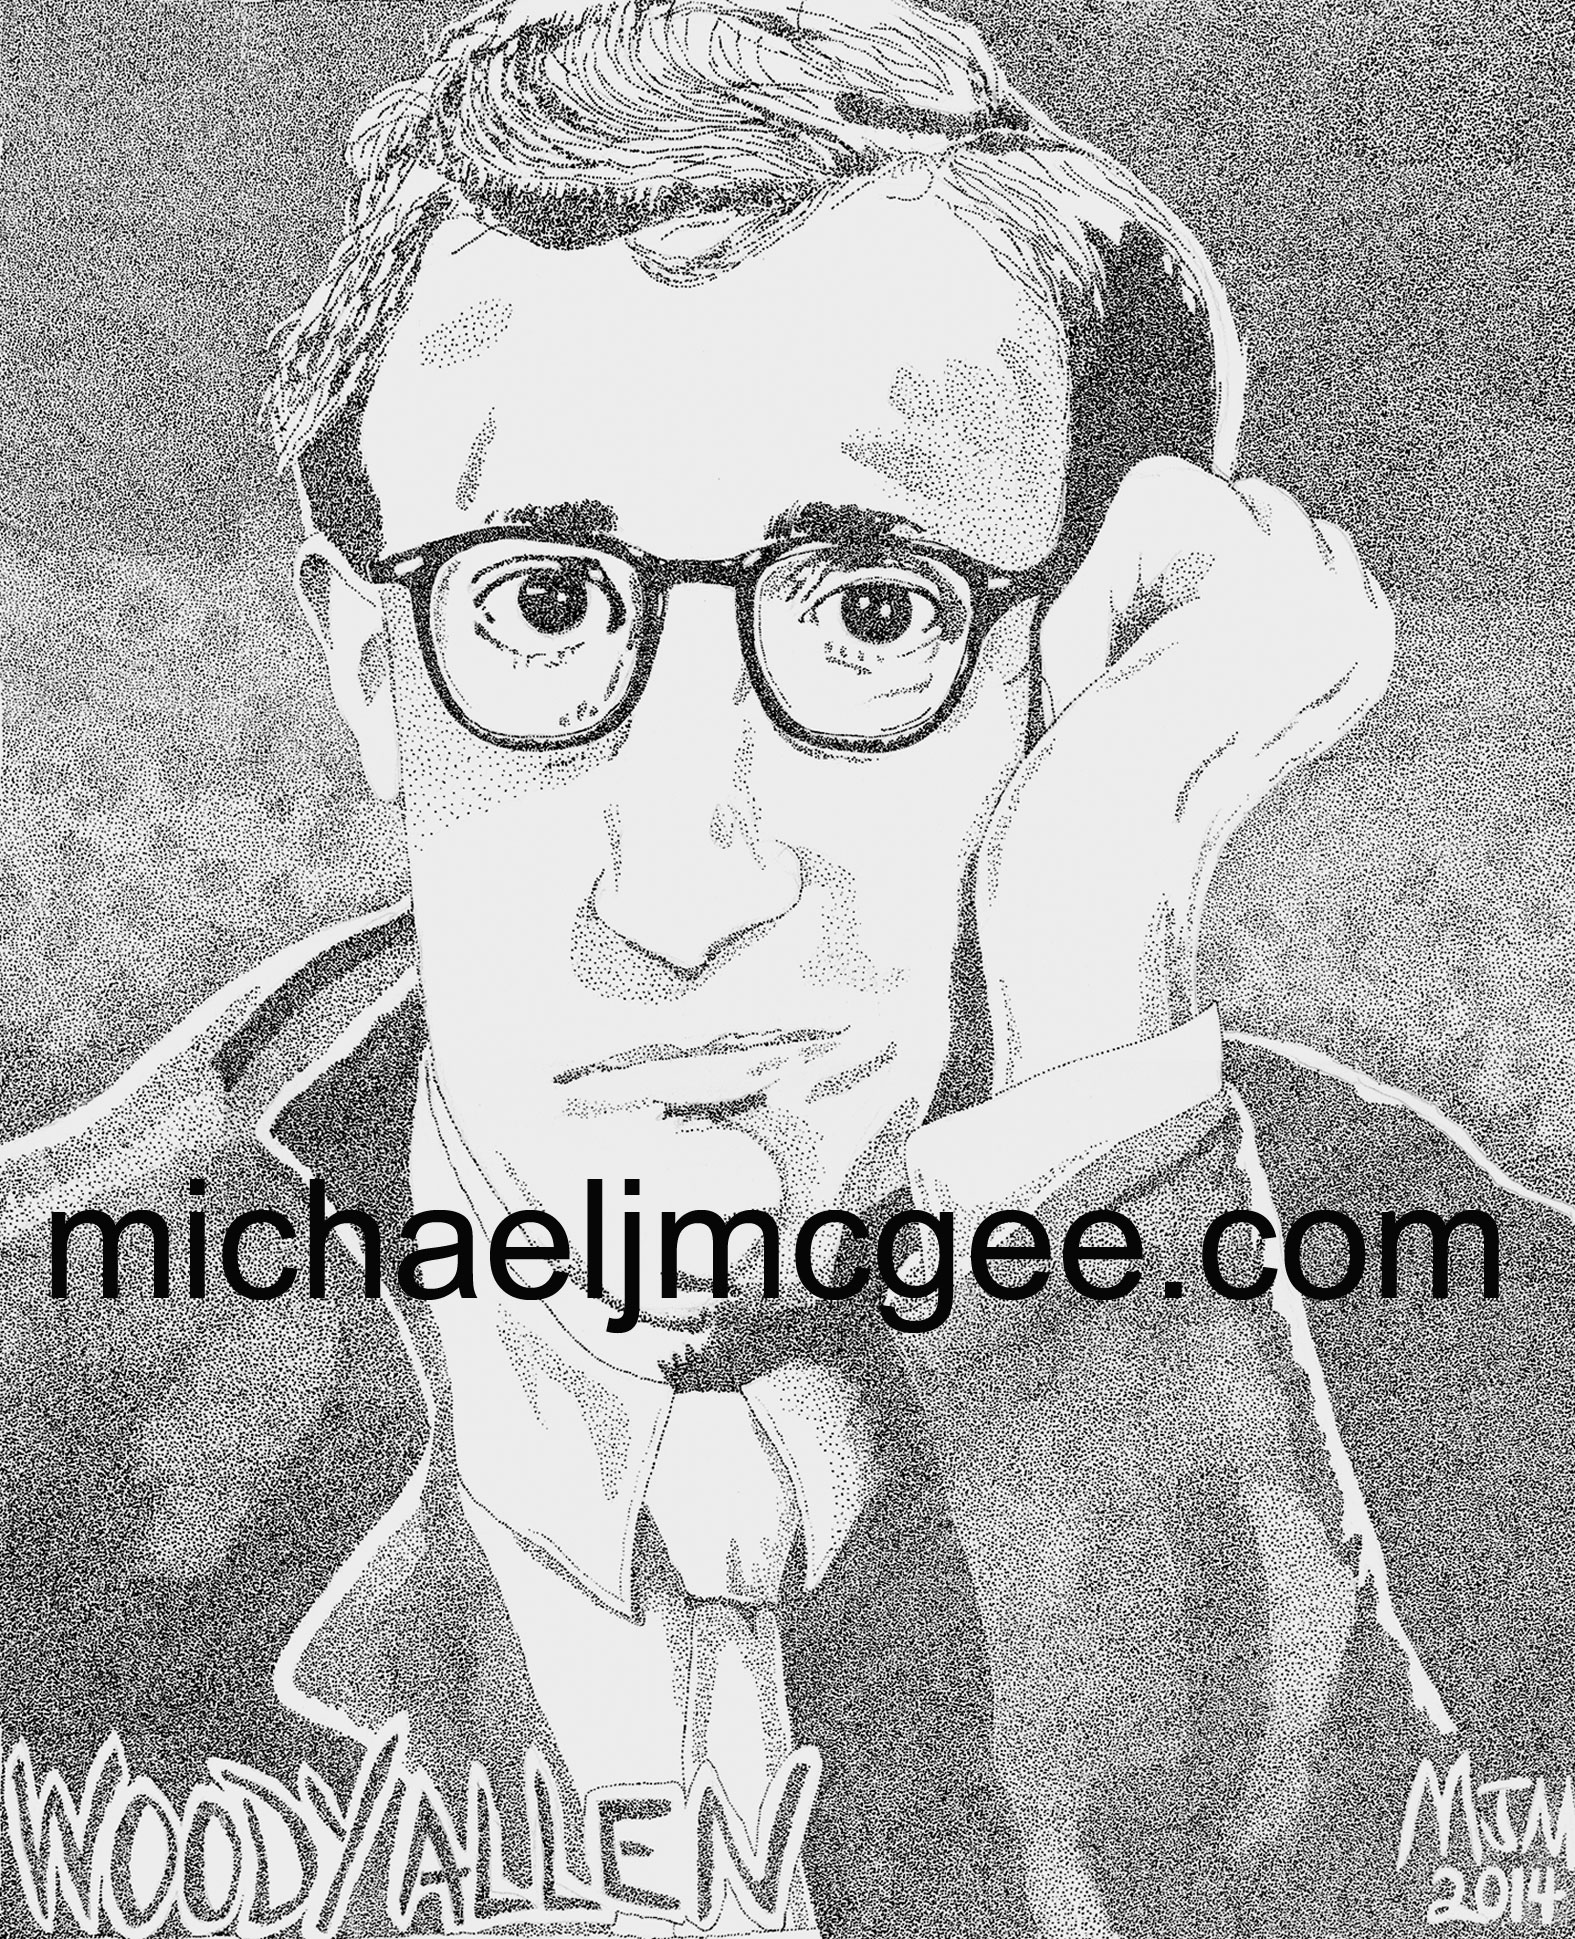 Woody Allen / michaeljmcgee.com